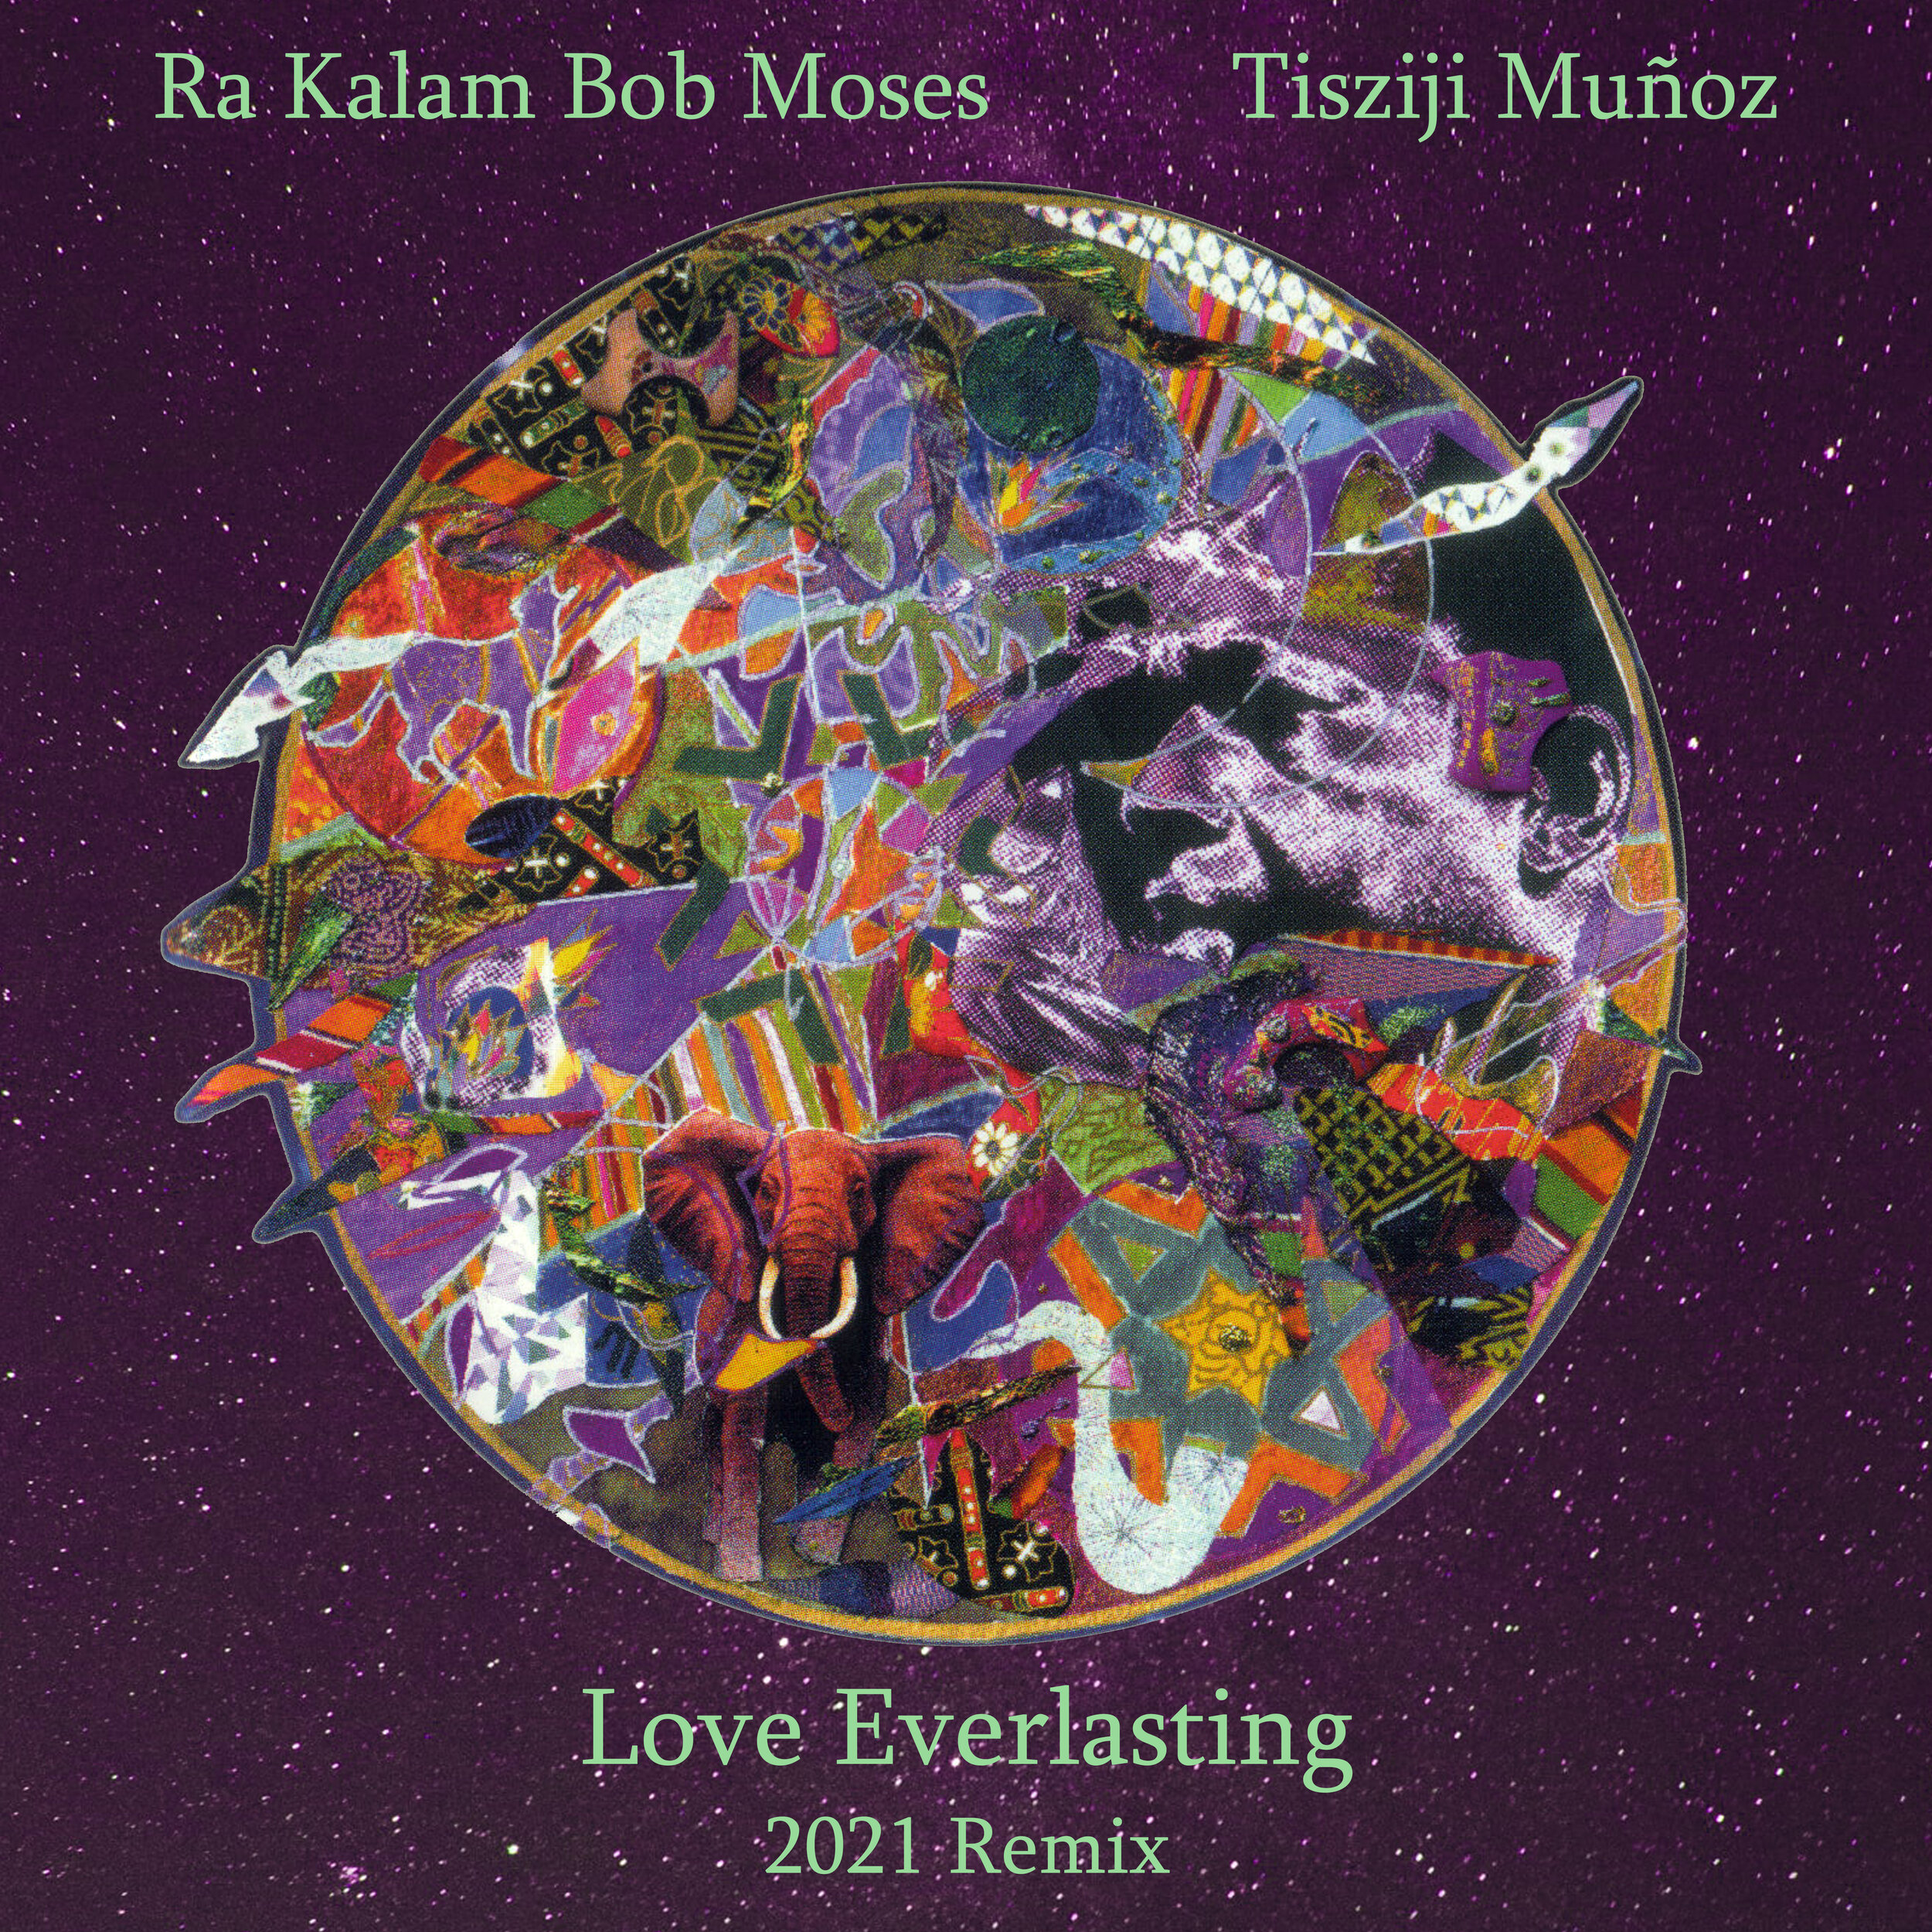 Ra Kalam Bob Moses Records — Native Pulse — Native Pulse